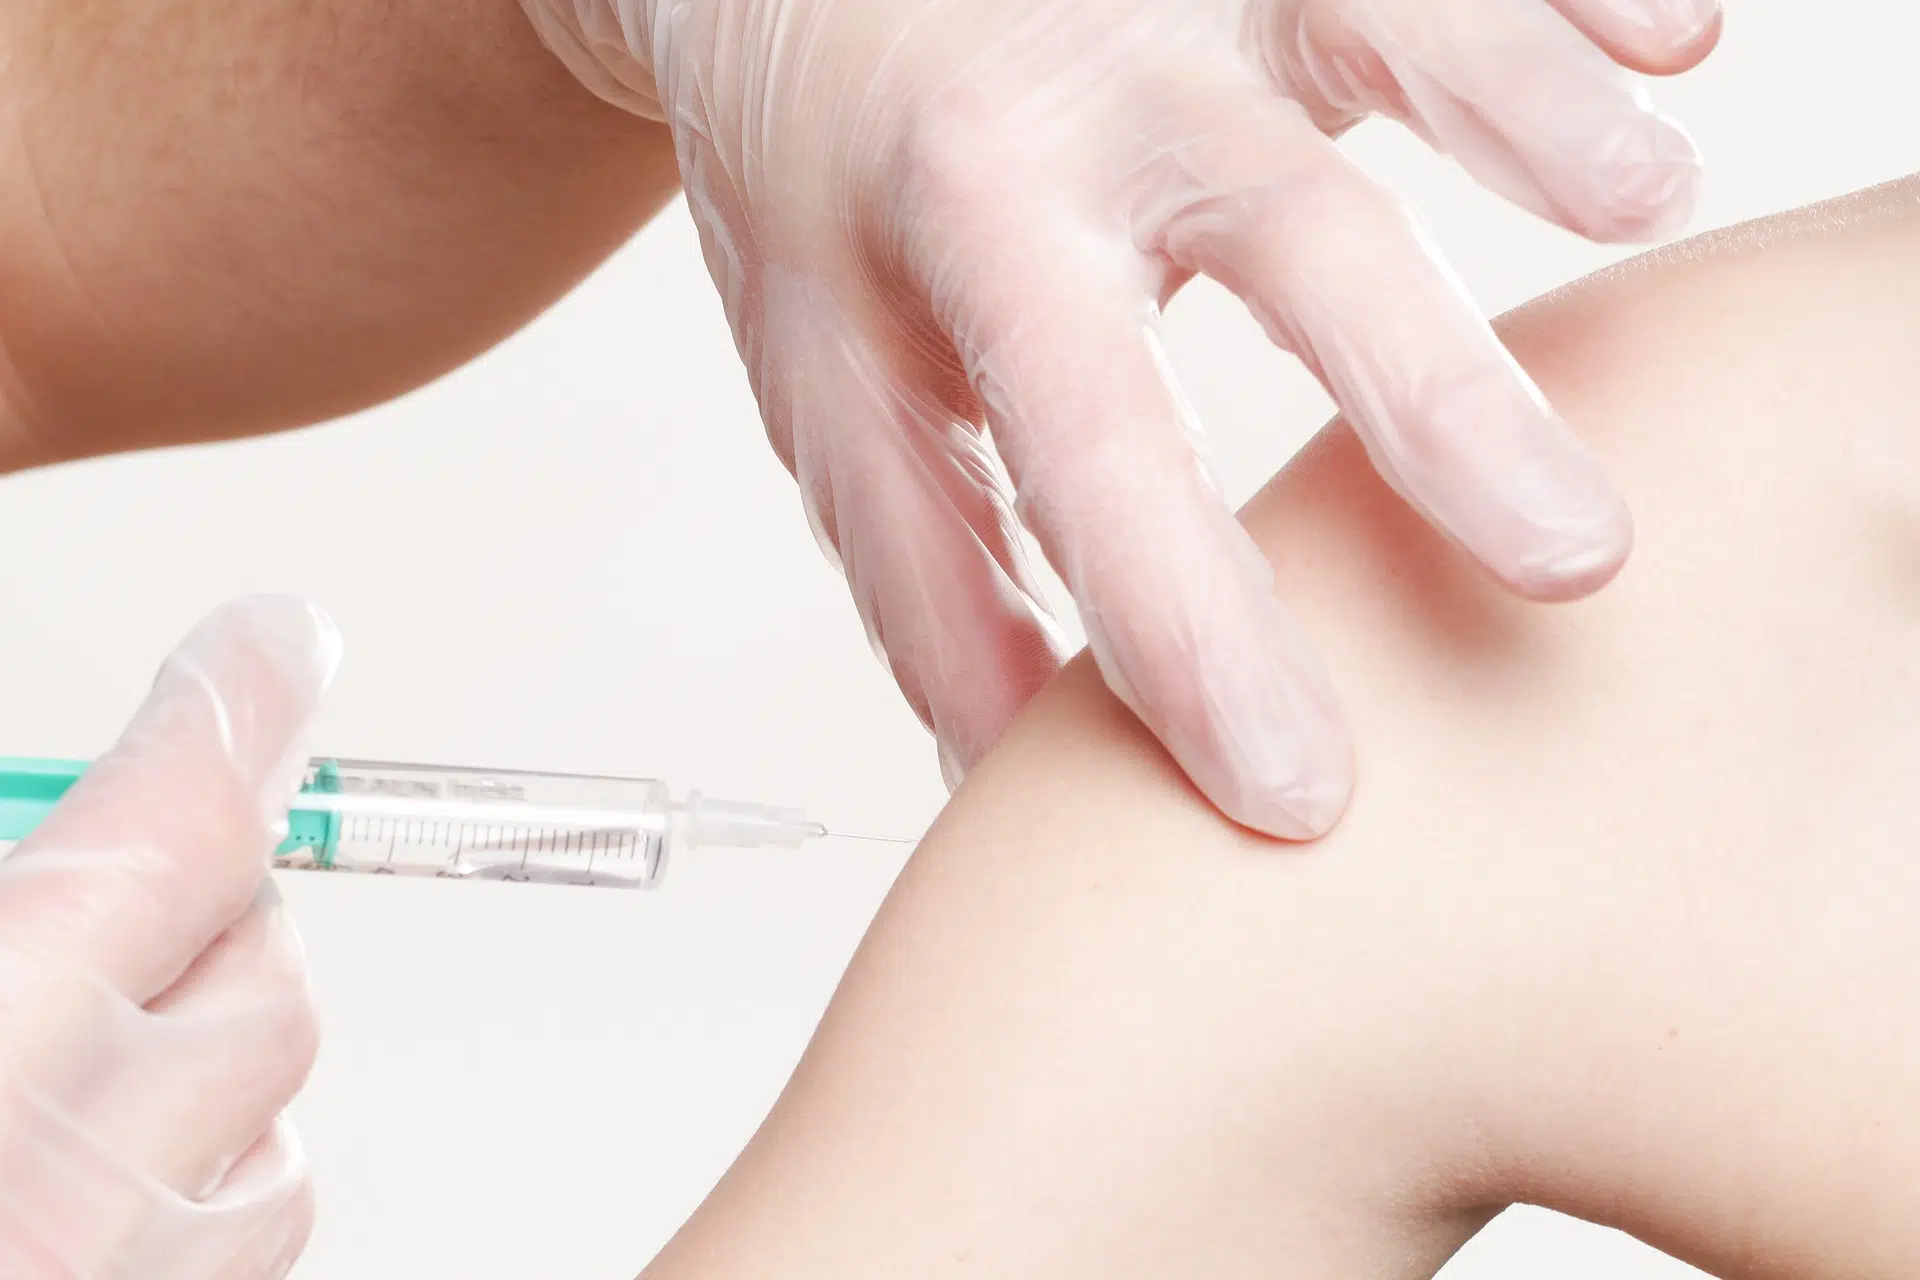 Merriman unworried about slow vaccination rates